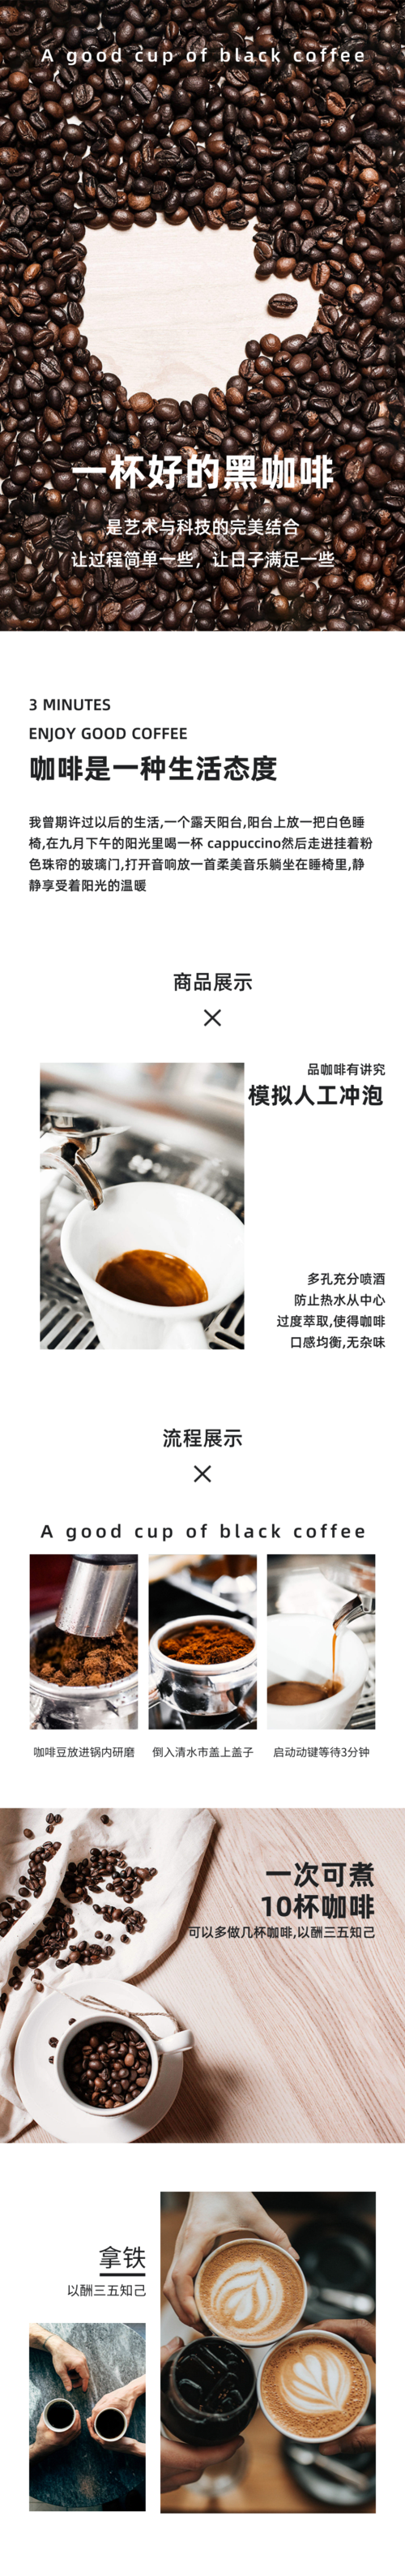 简约风咖啡豆促销宣传详情页